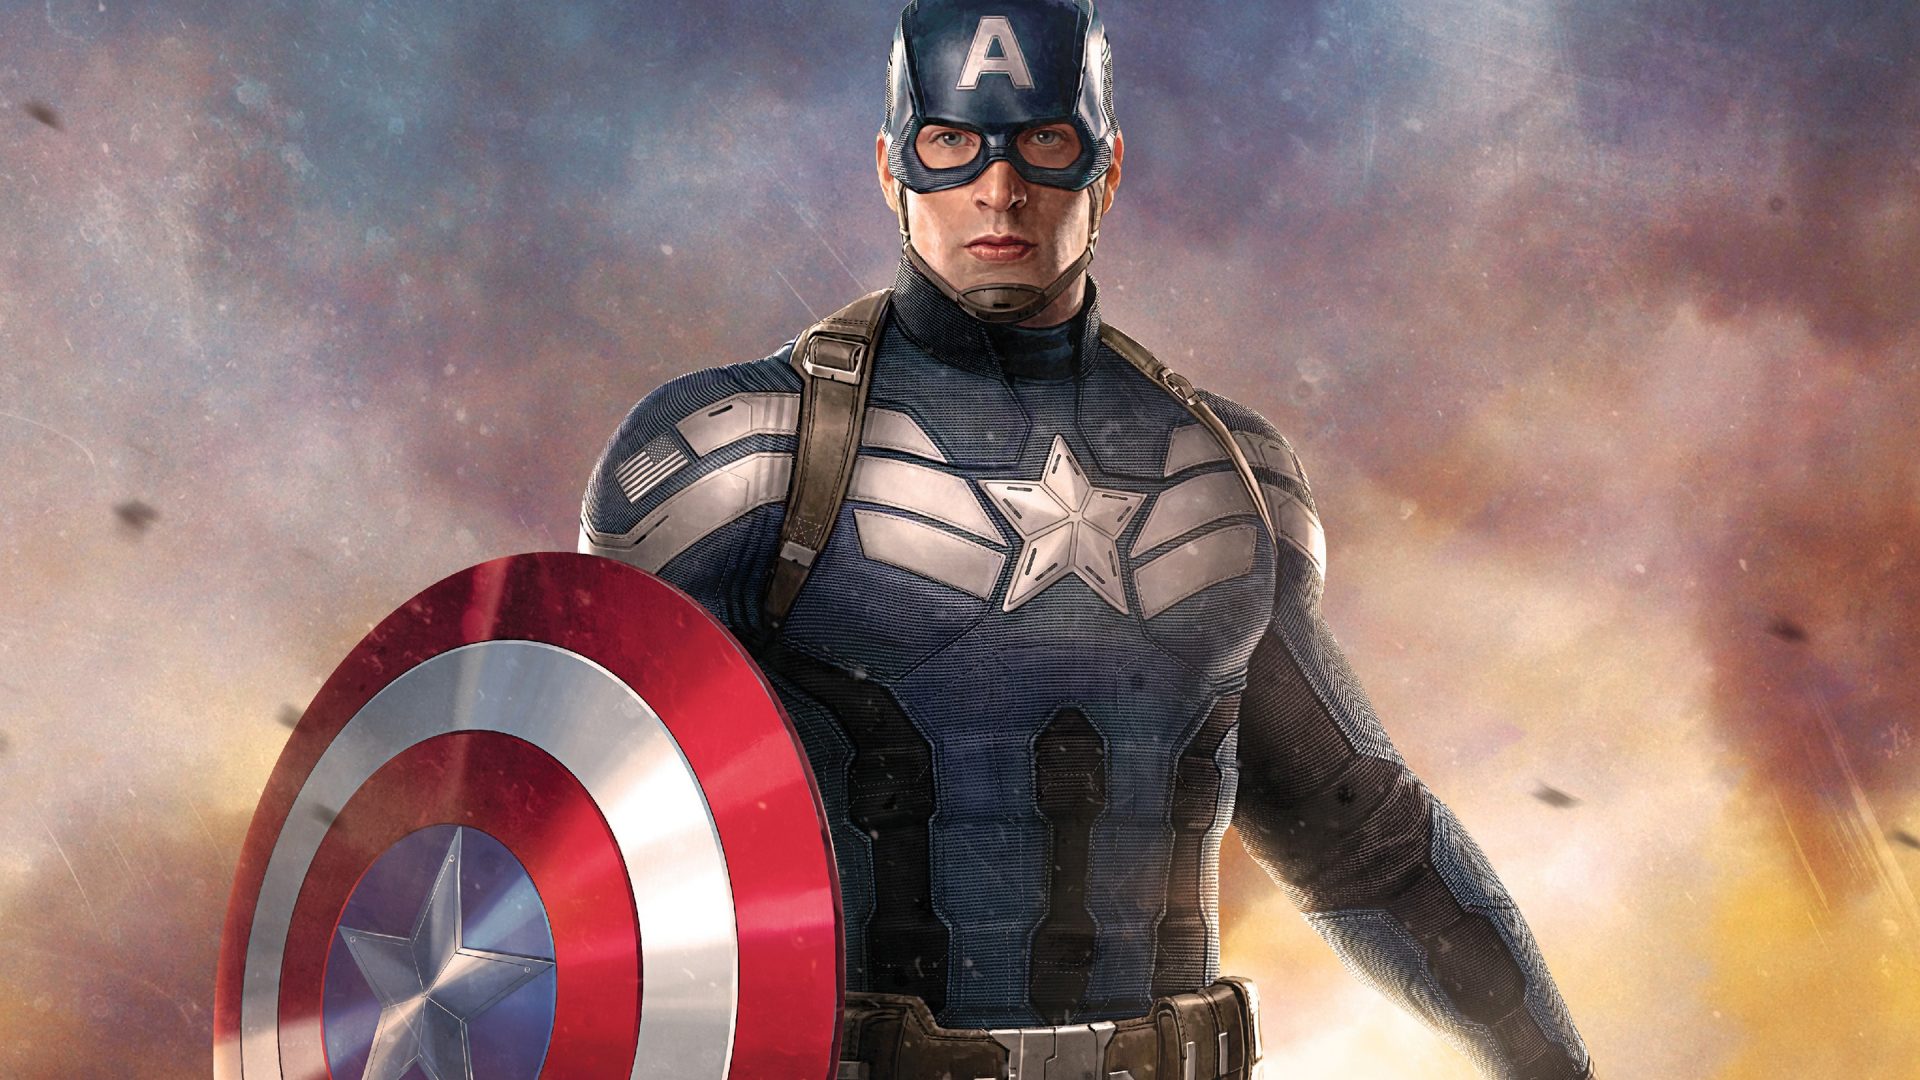 캡틴 아메리카의 hd 벽지 for mobile,슈퍼 히어로,소설 속의 인물,캡틴 아메리카,영화,영웅